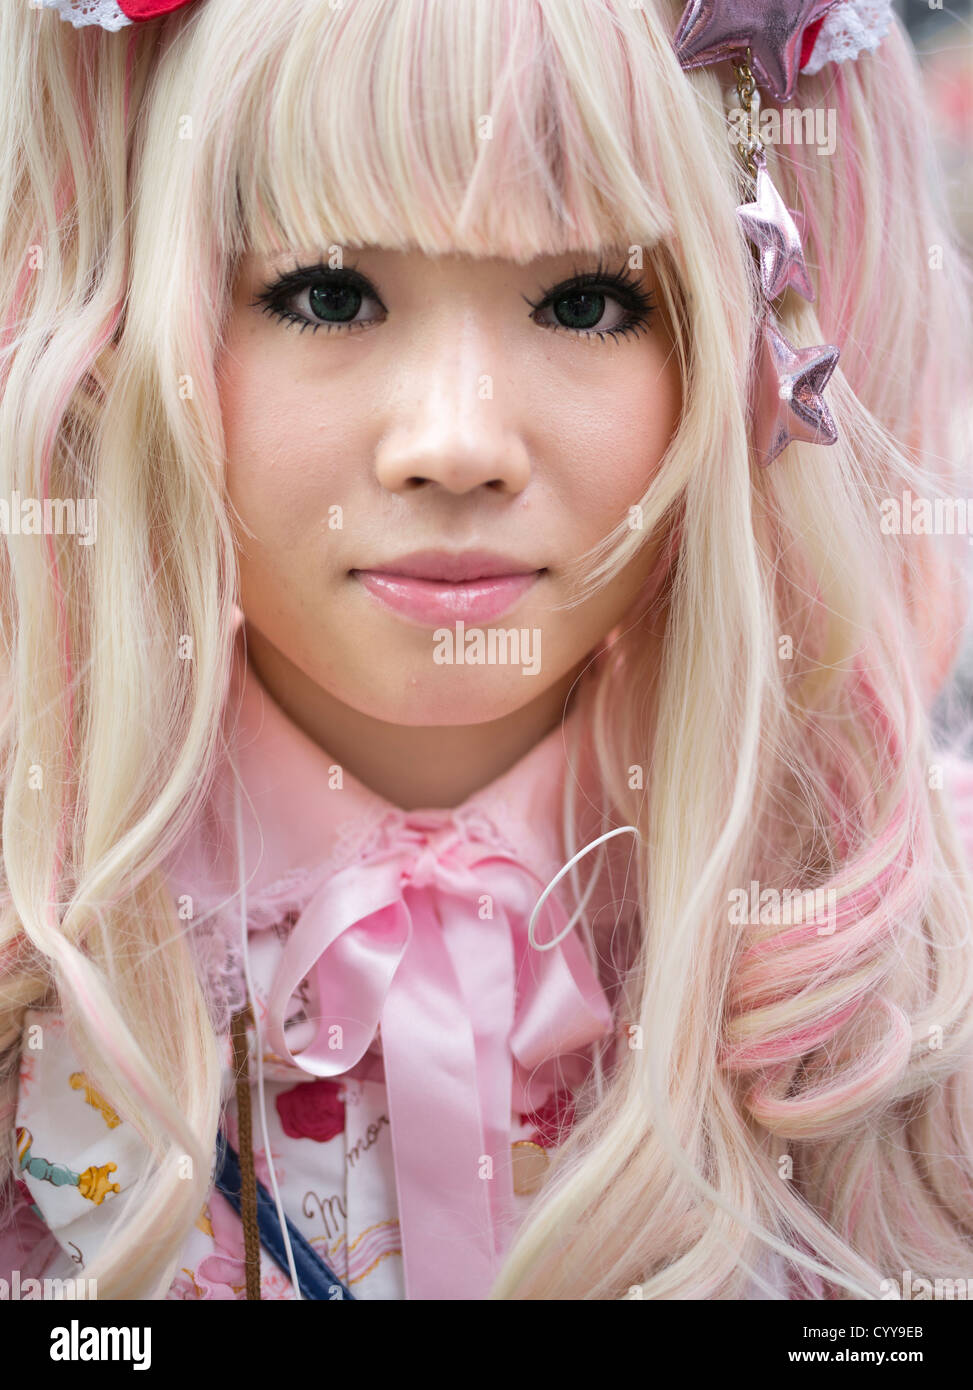 Jovencita japonesa en kawaii lolita traje de moda alternativa, con el cabello rubio y vestido rosado Foto de stock